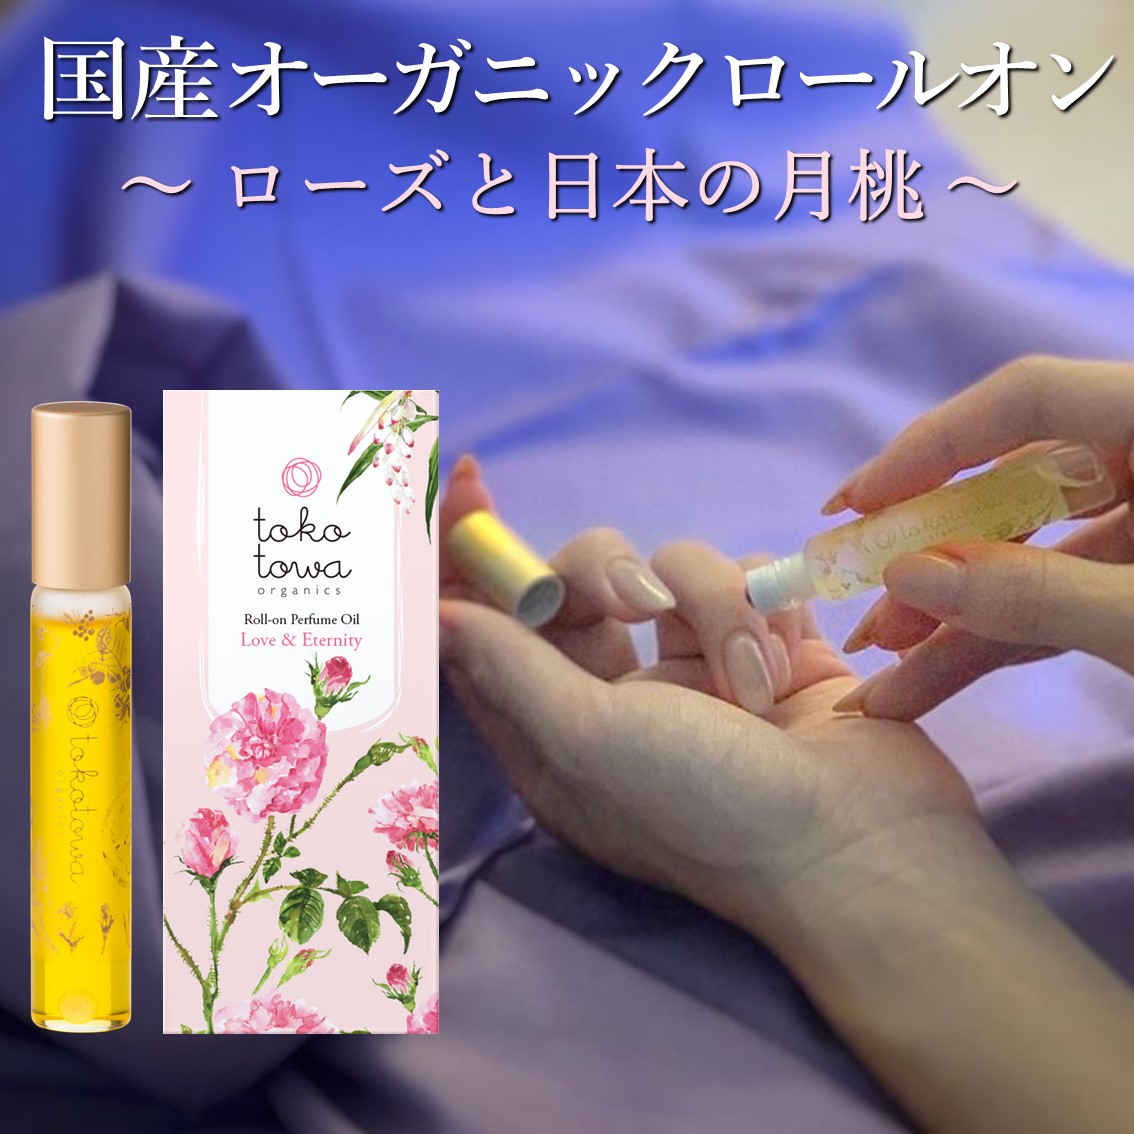 摘みたてのローズと花々の贅沢な香り。tokotowa organics の100％自然の香り。持ち運びに便利で、ネイルケアや毛先のケア、香りで気分アップ。メッセージ【愛情と永遠】 オーガニックロールオンパフュームオイル 【ローズと日本の月桃の、薔薇園にいる様な香り】 ピンク 7.8ml - フレグランス 香水 いい匂い 女性が好きな香り ネイルオイル アロマオイル 精油 天然 国産 ギフト プレゼント 人気 誕生日 出産祝い トコトワオーガニクス